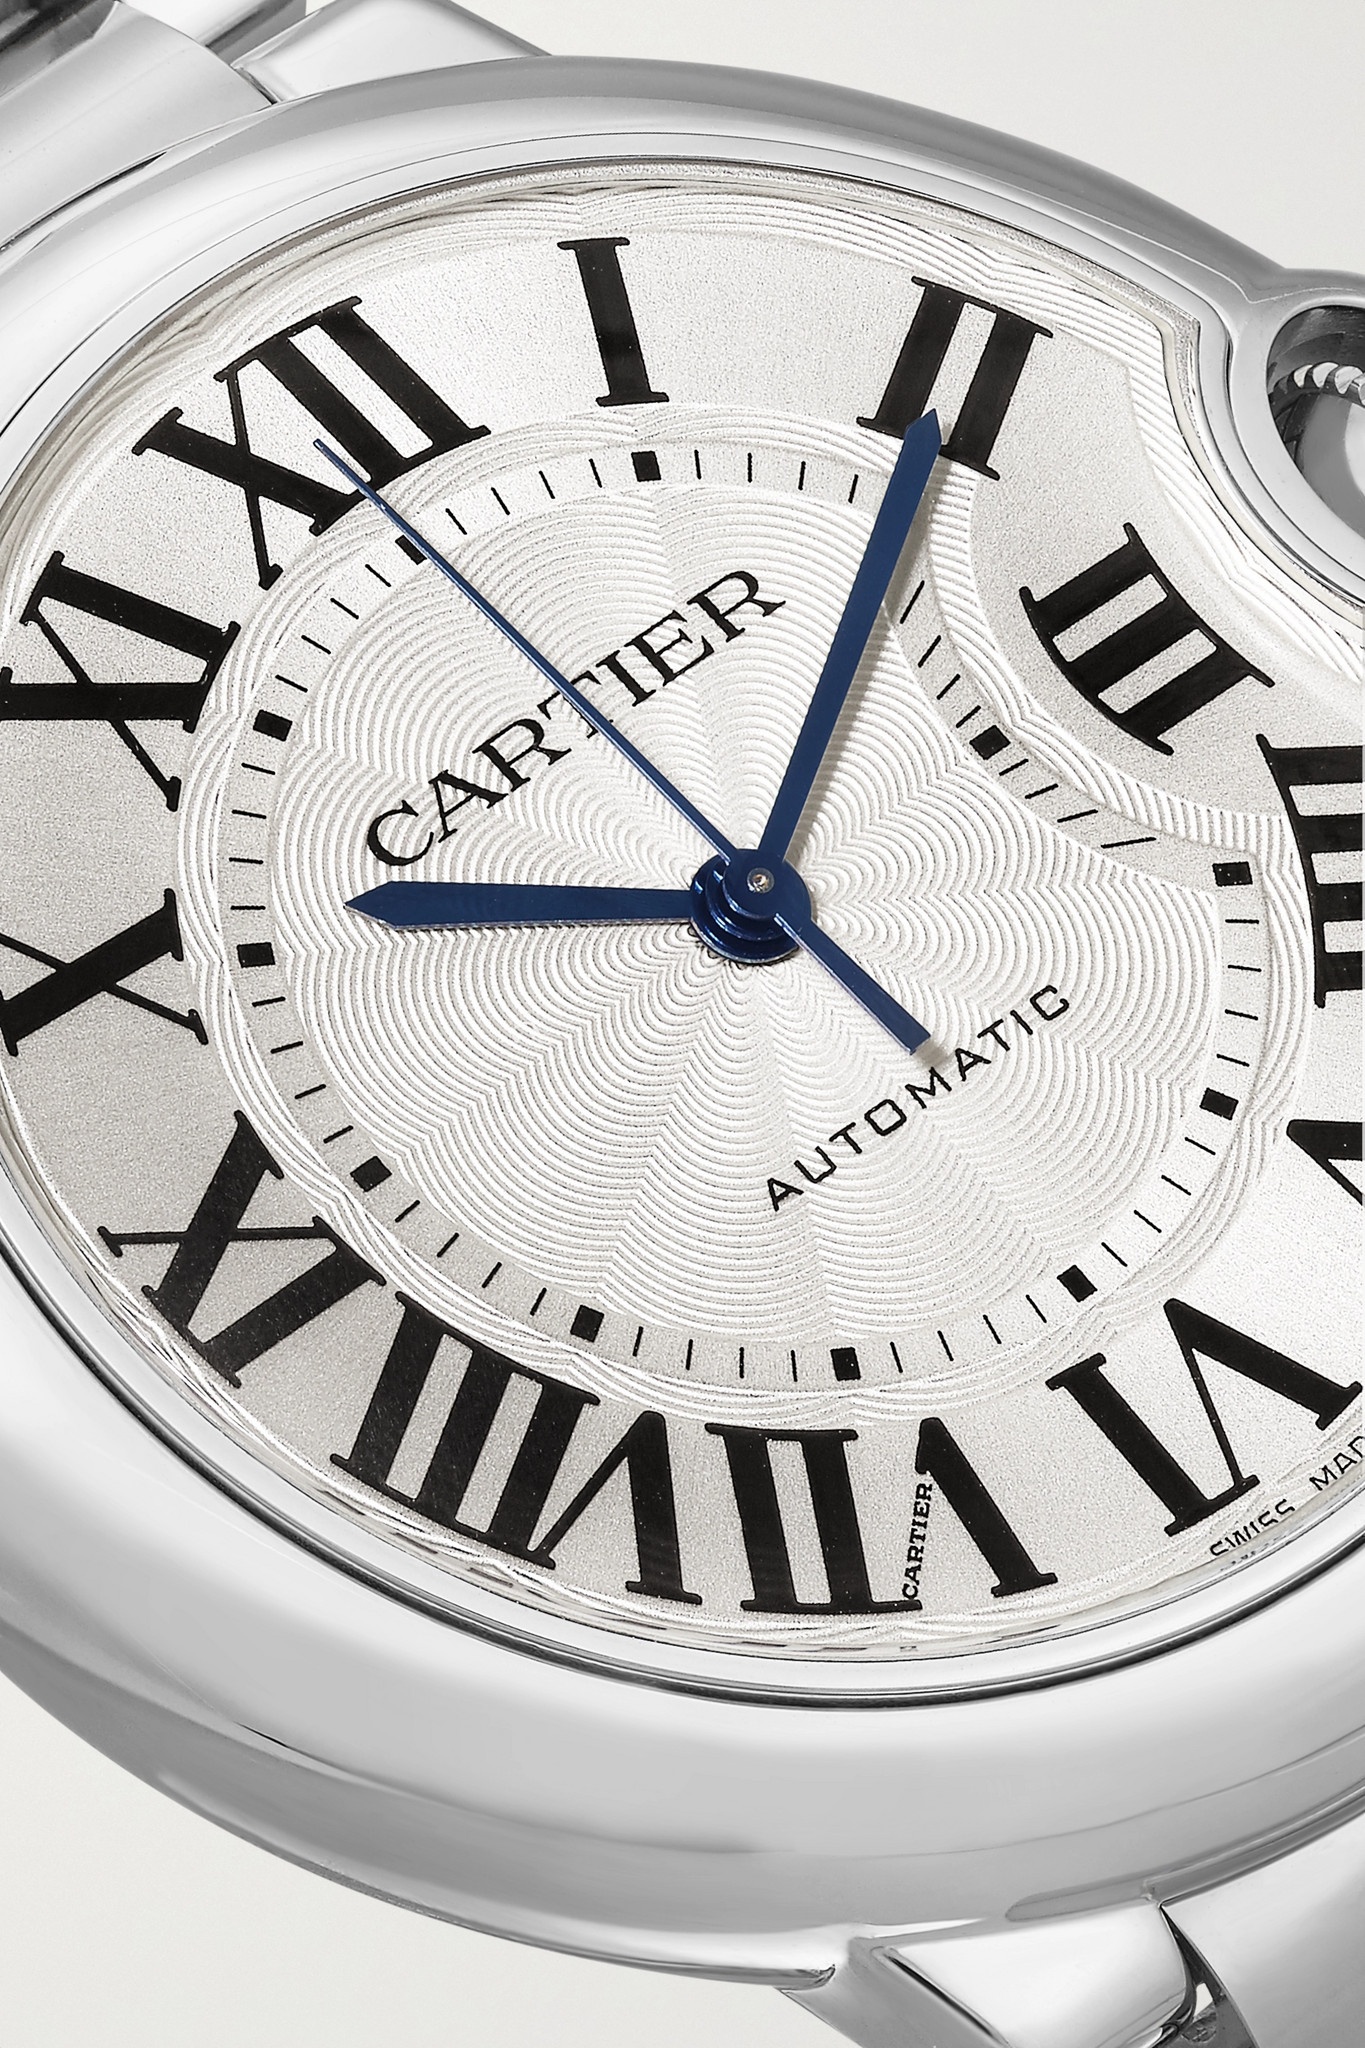 Ballon Bleu de Cartier Automatic 36.6mm stainless steel watch - 5